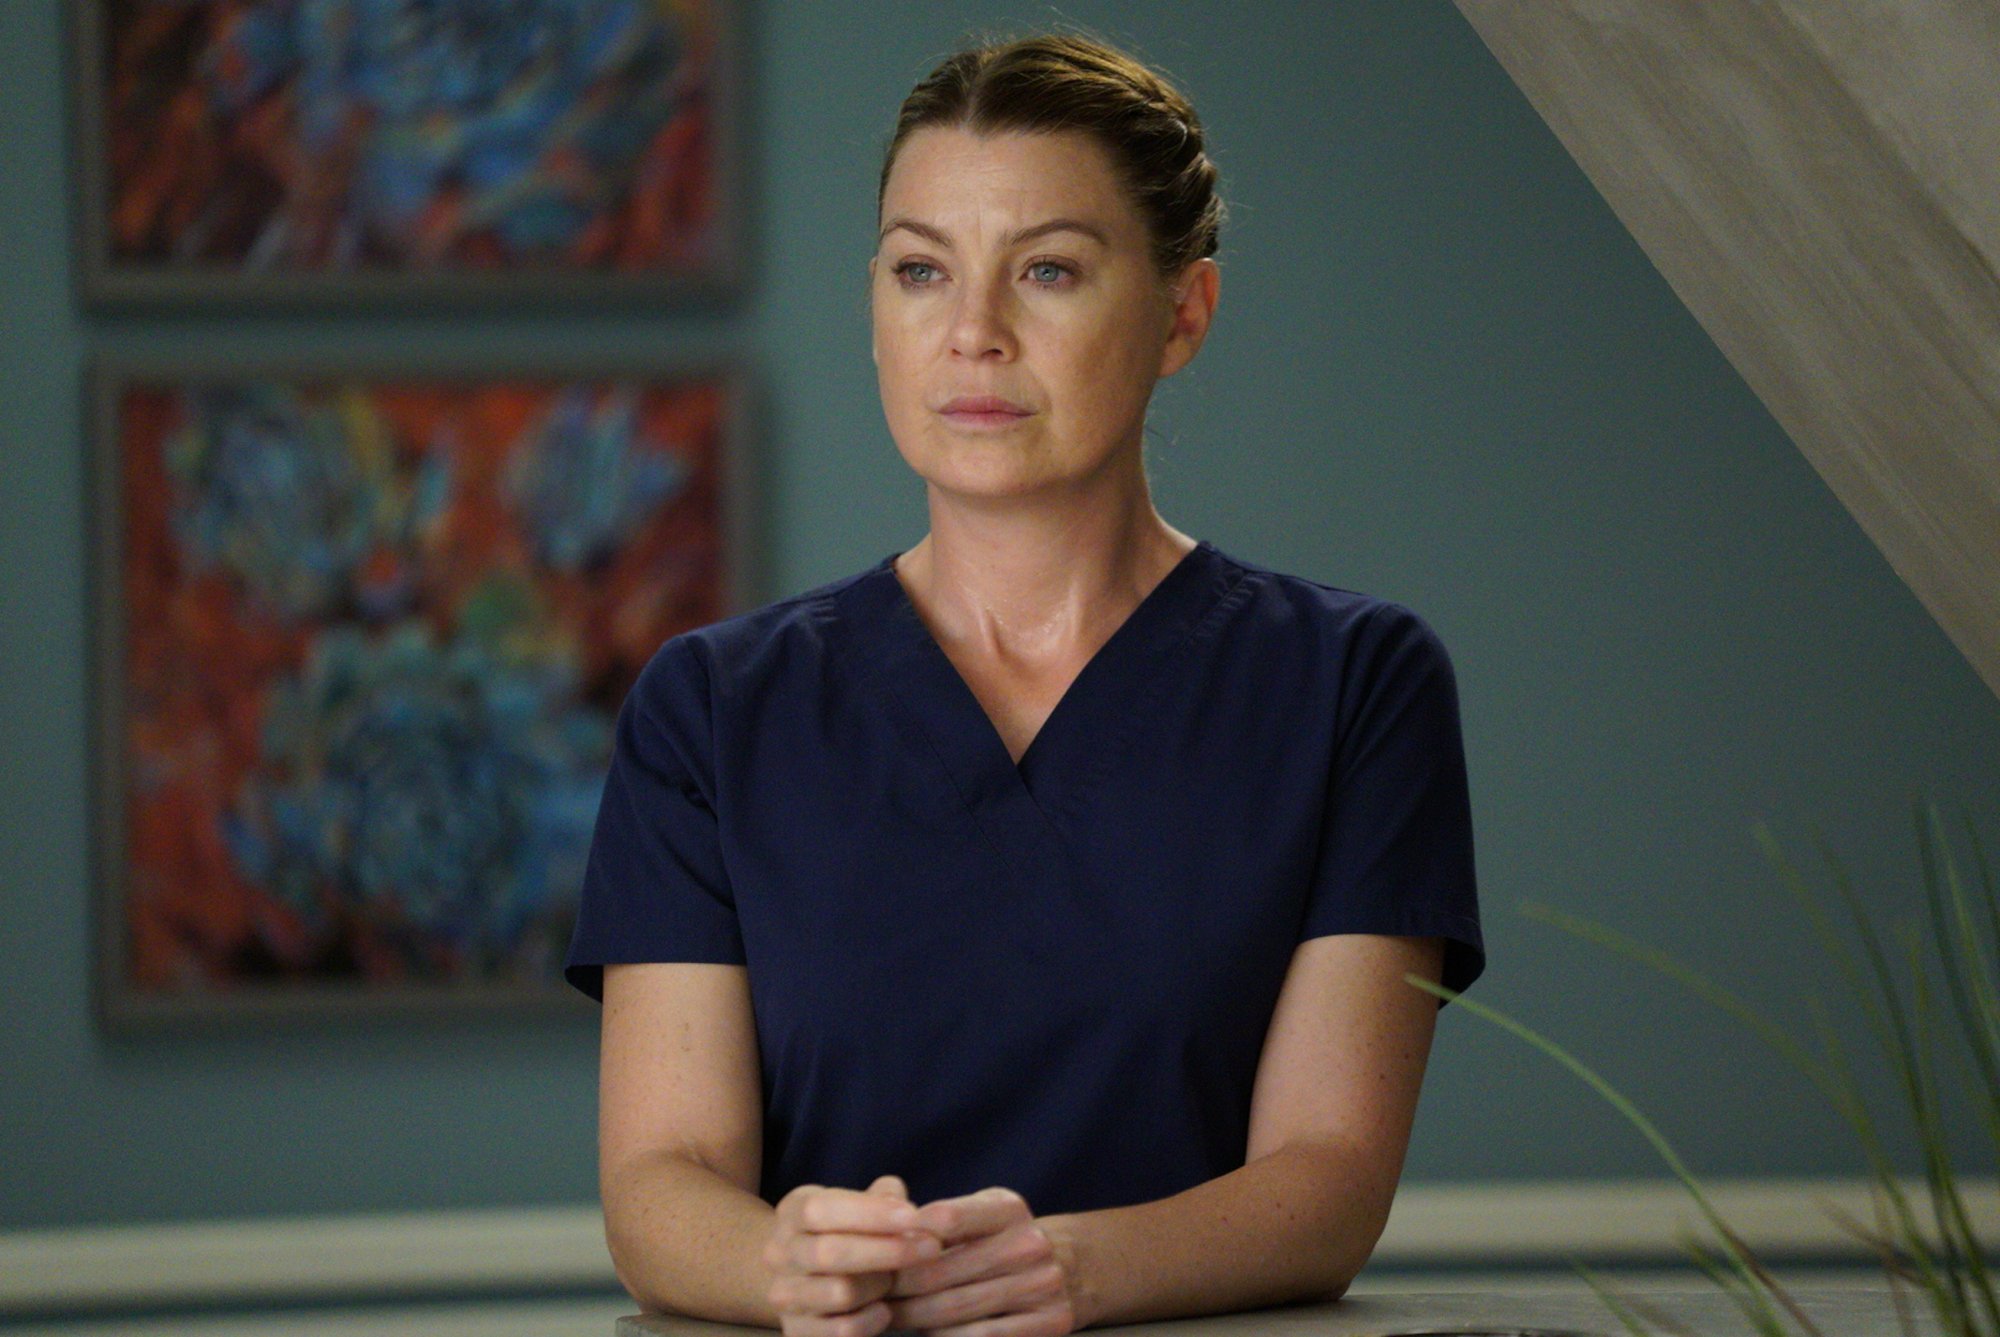 Ellen Pompeo wearing blue hospital scrubs in 'Grey's Anatomy' Season 14.